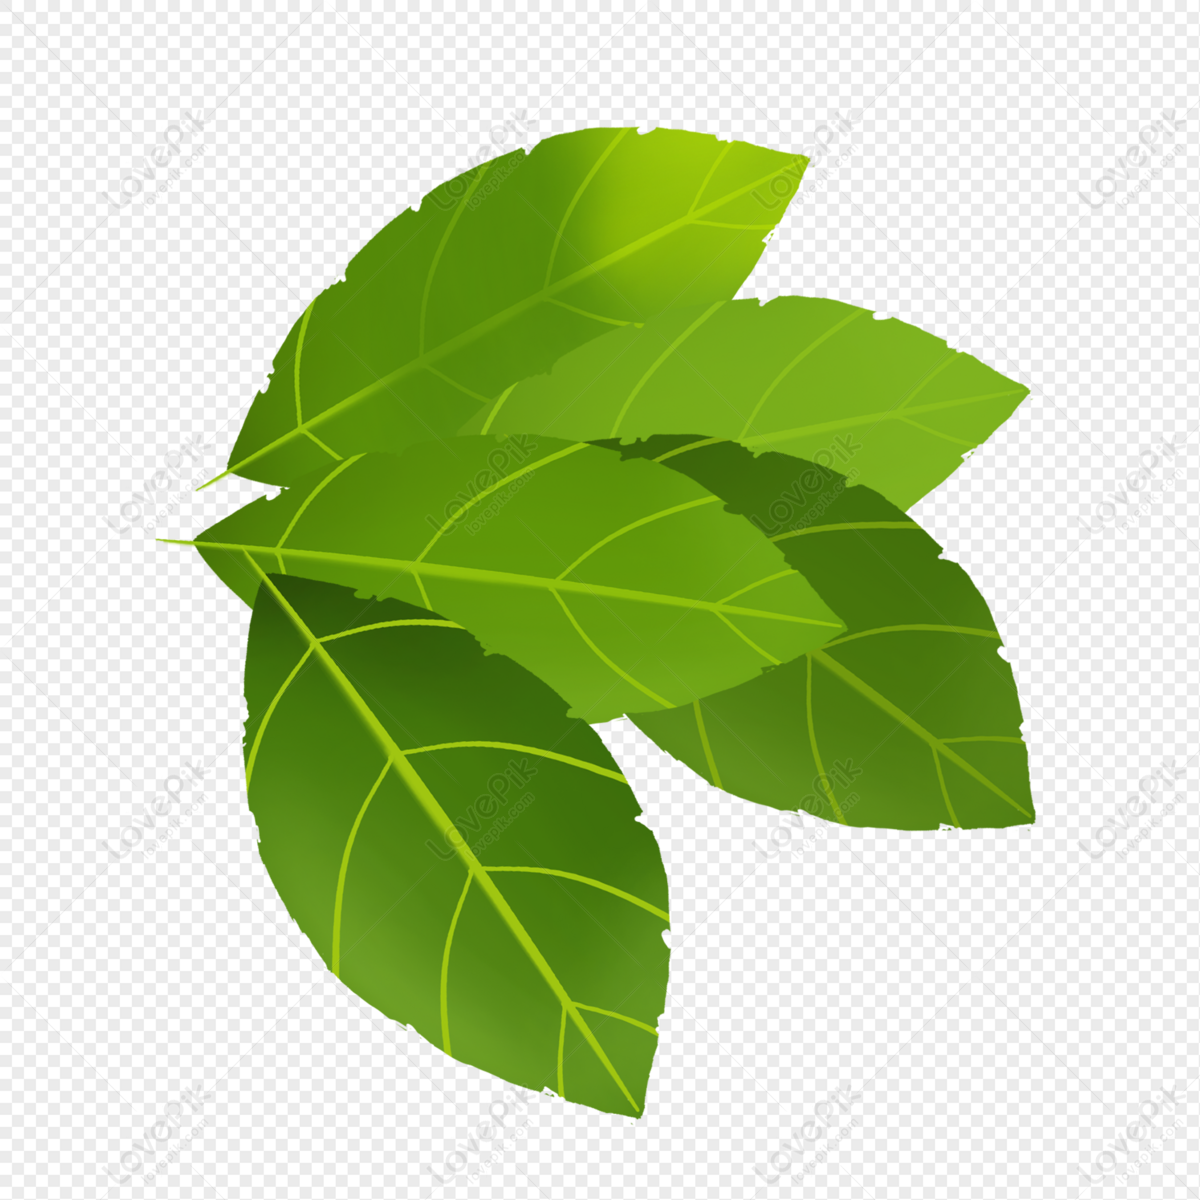 A Leaf Image PNG Free Download - Lovepik